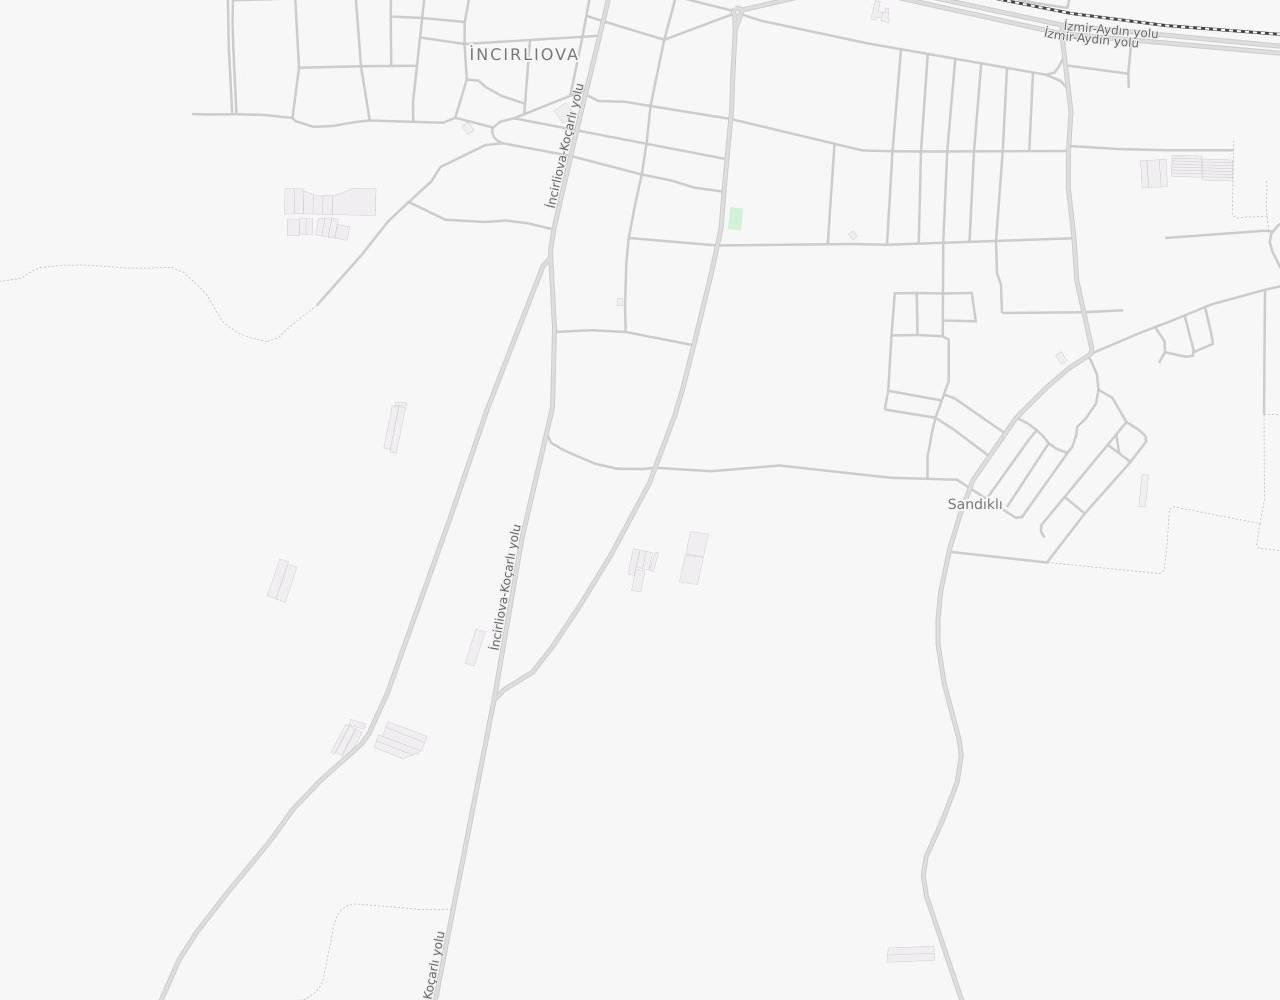 Yıldırım Beyazıt Caddesi Zafer İncirliova Aydın harita